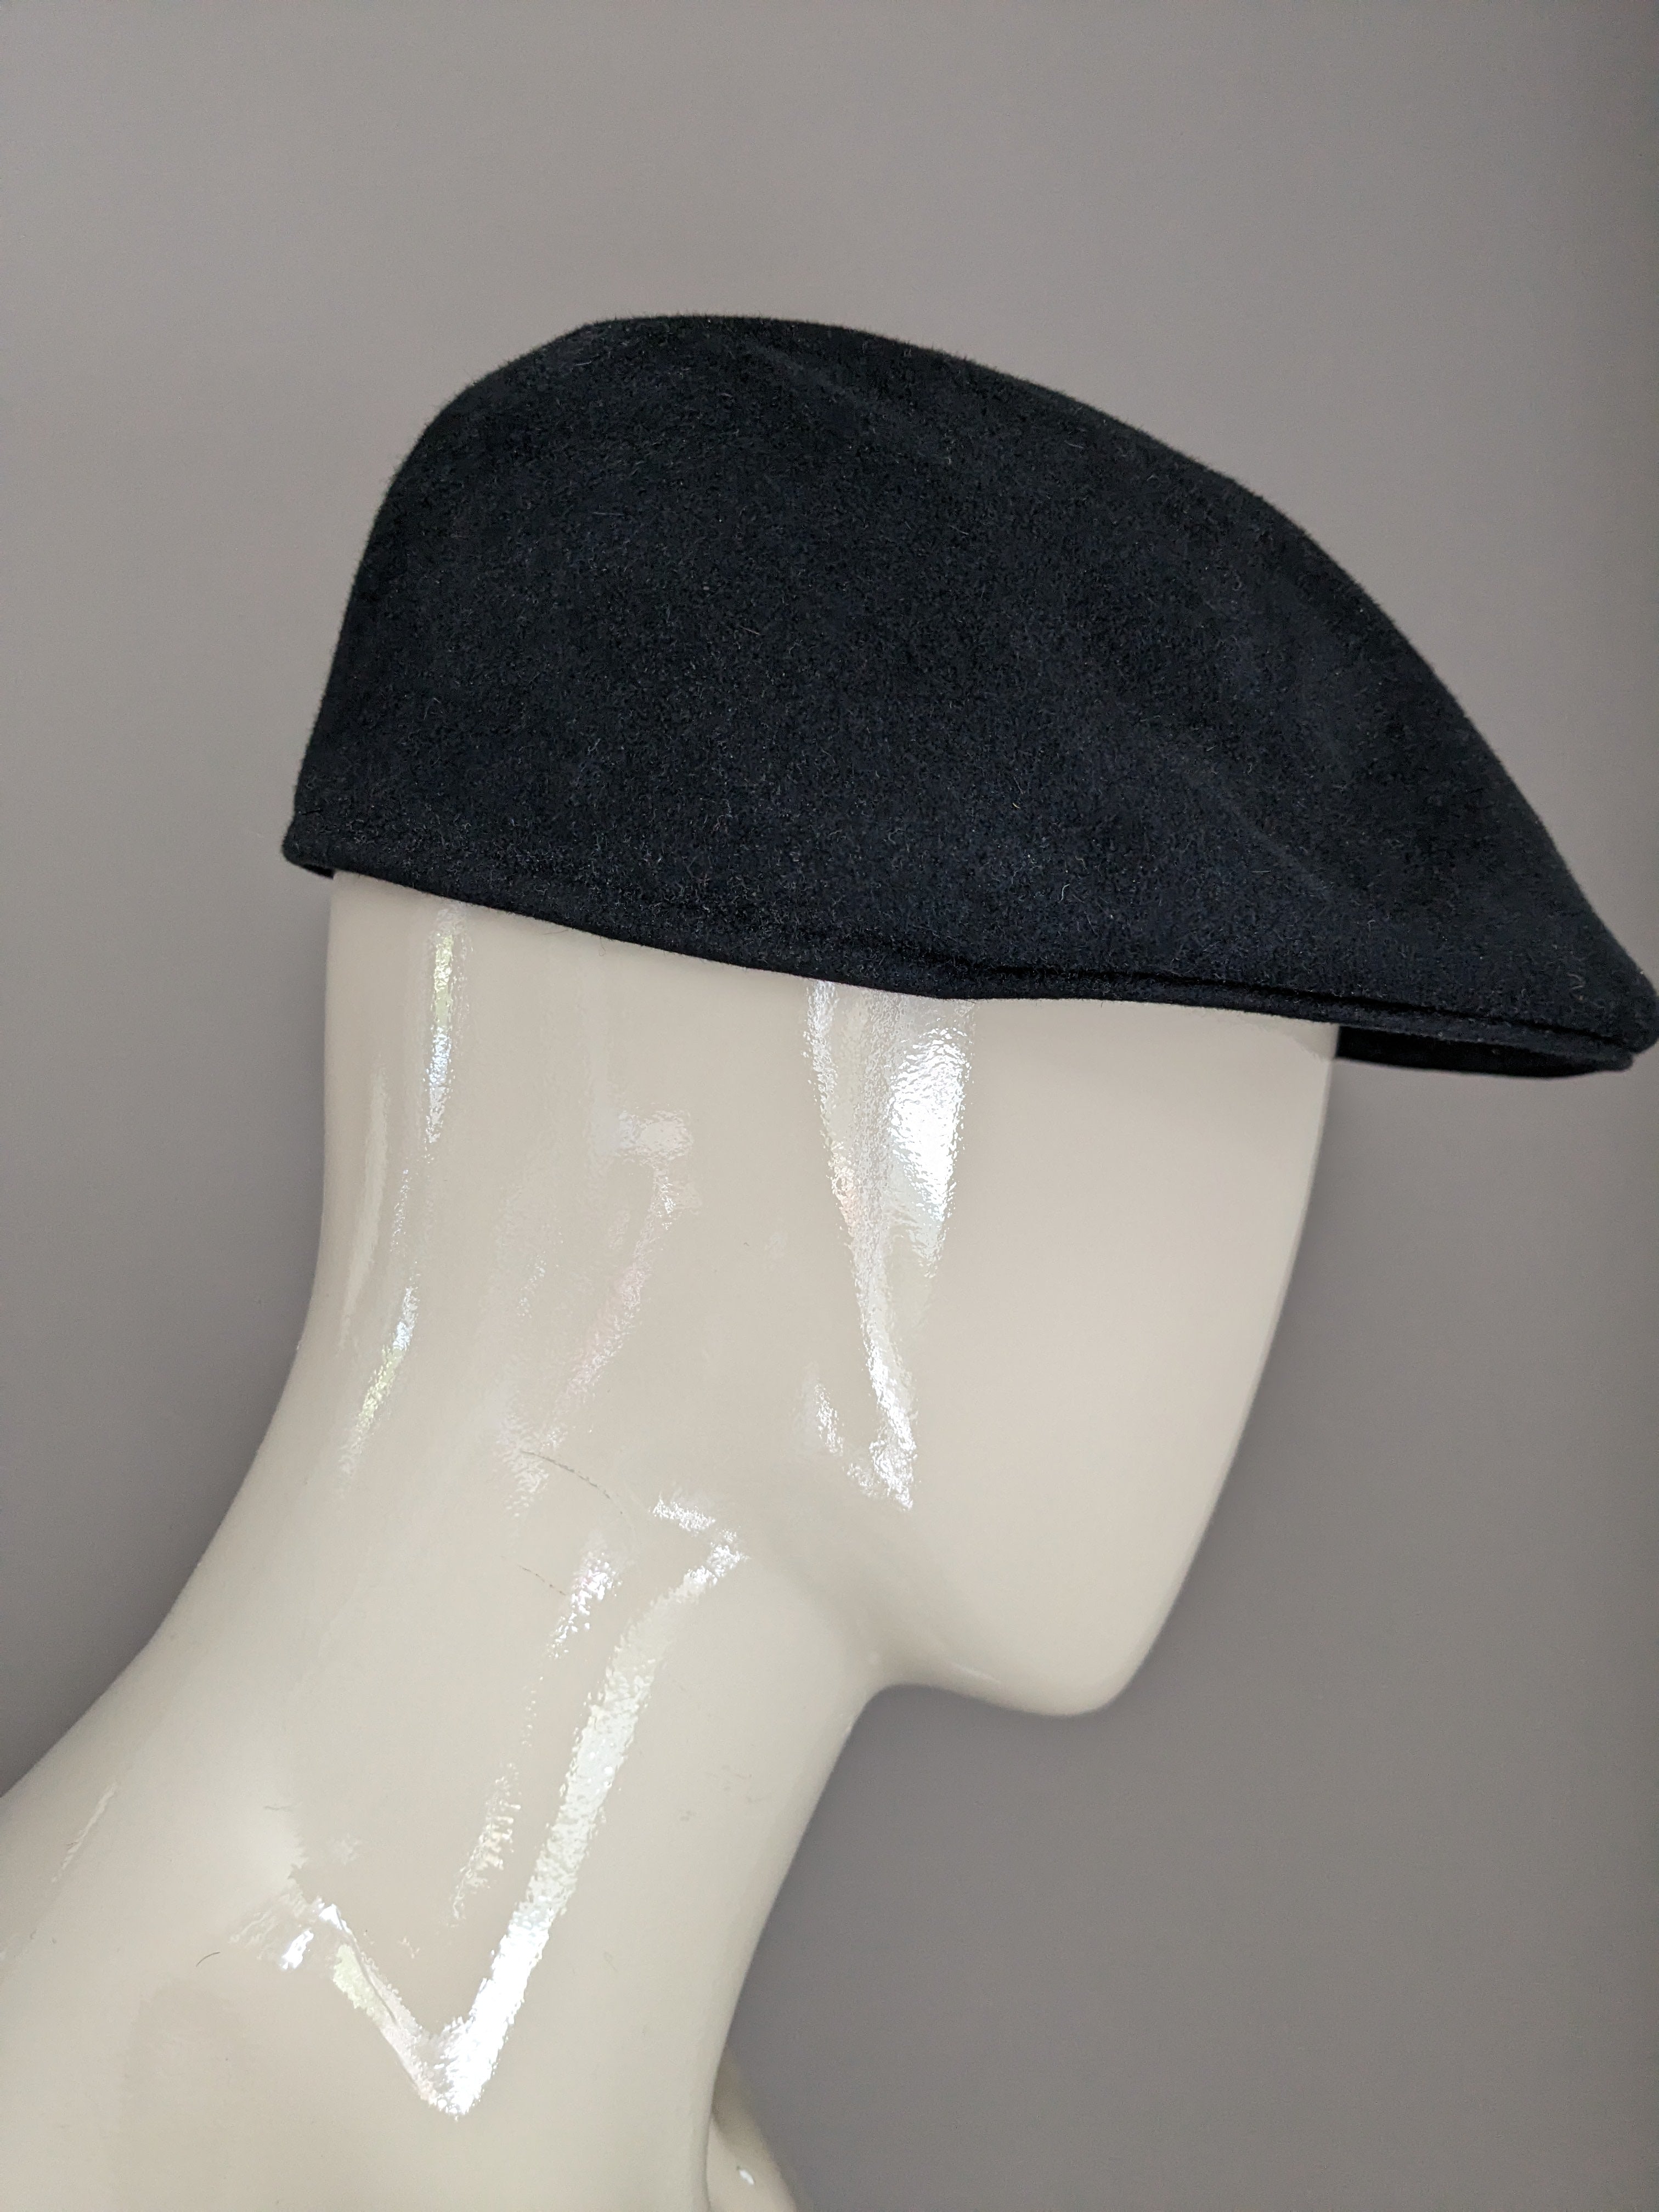 Mayser flat cap Zwart gekleurd. Haar. Maat 59. #701 | EcoGents